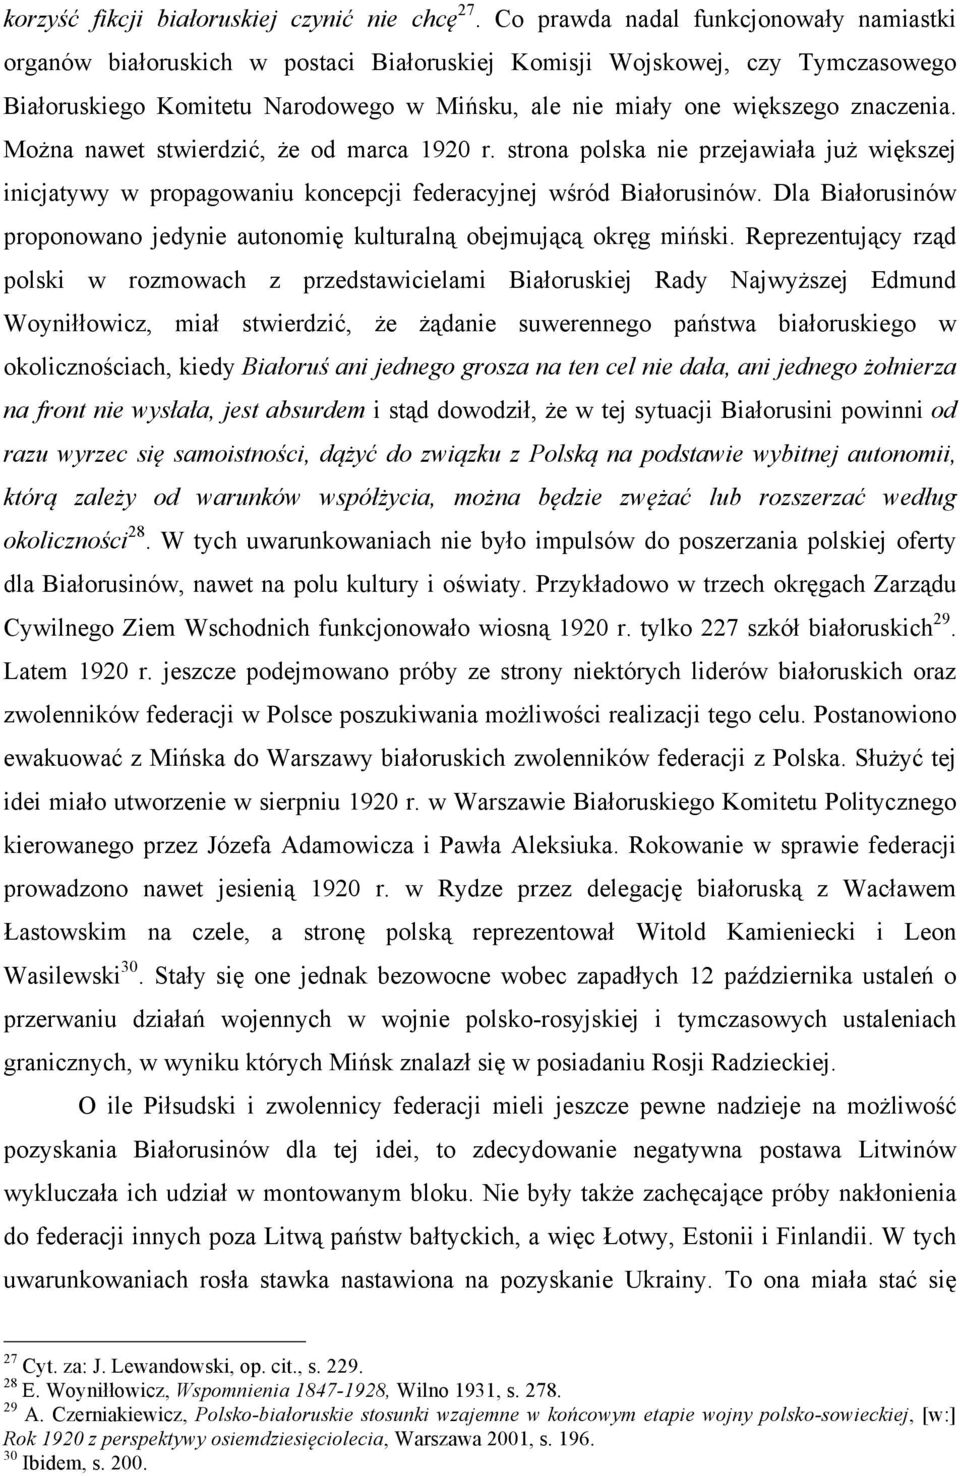 znaczenia. Można nawet stwierdzić, że od marca 1920 r. strona polska nie przejawiała już większej inicjatywy w propagowaniu koncepcji federacyjnej wśród Białorusinów.